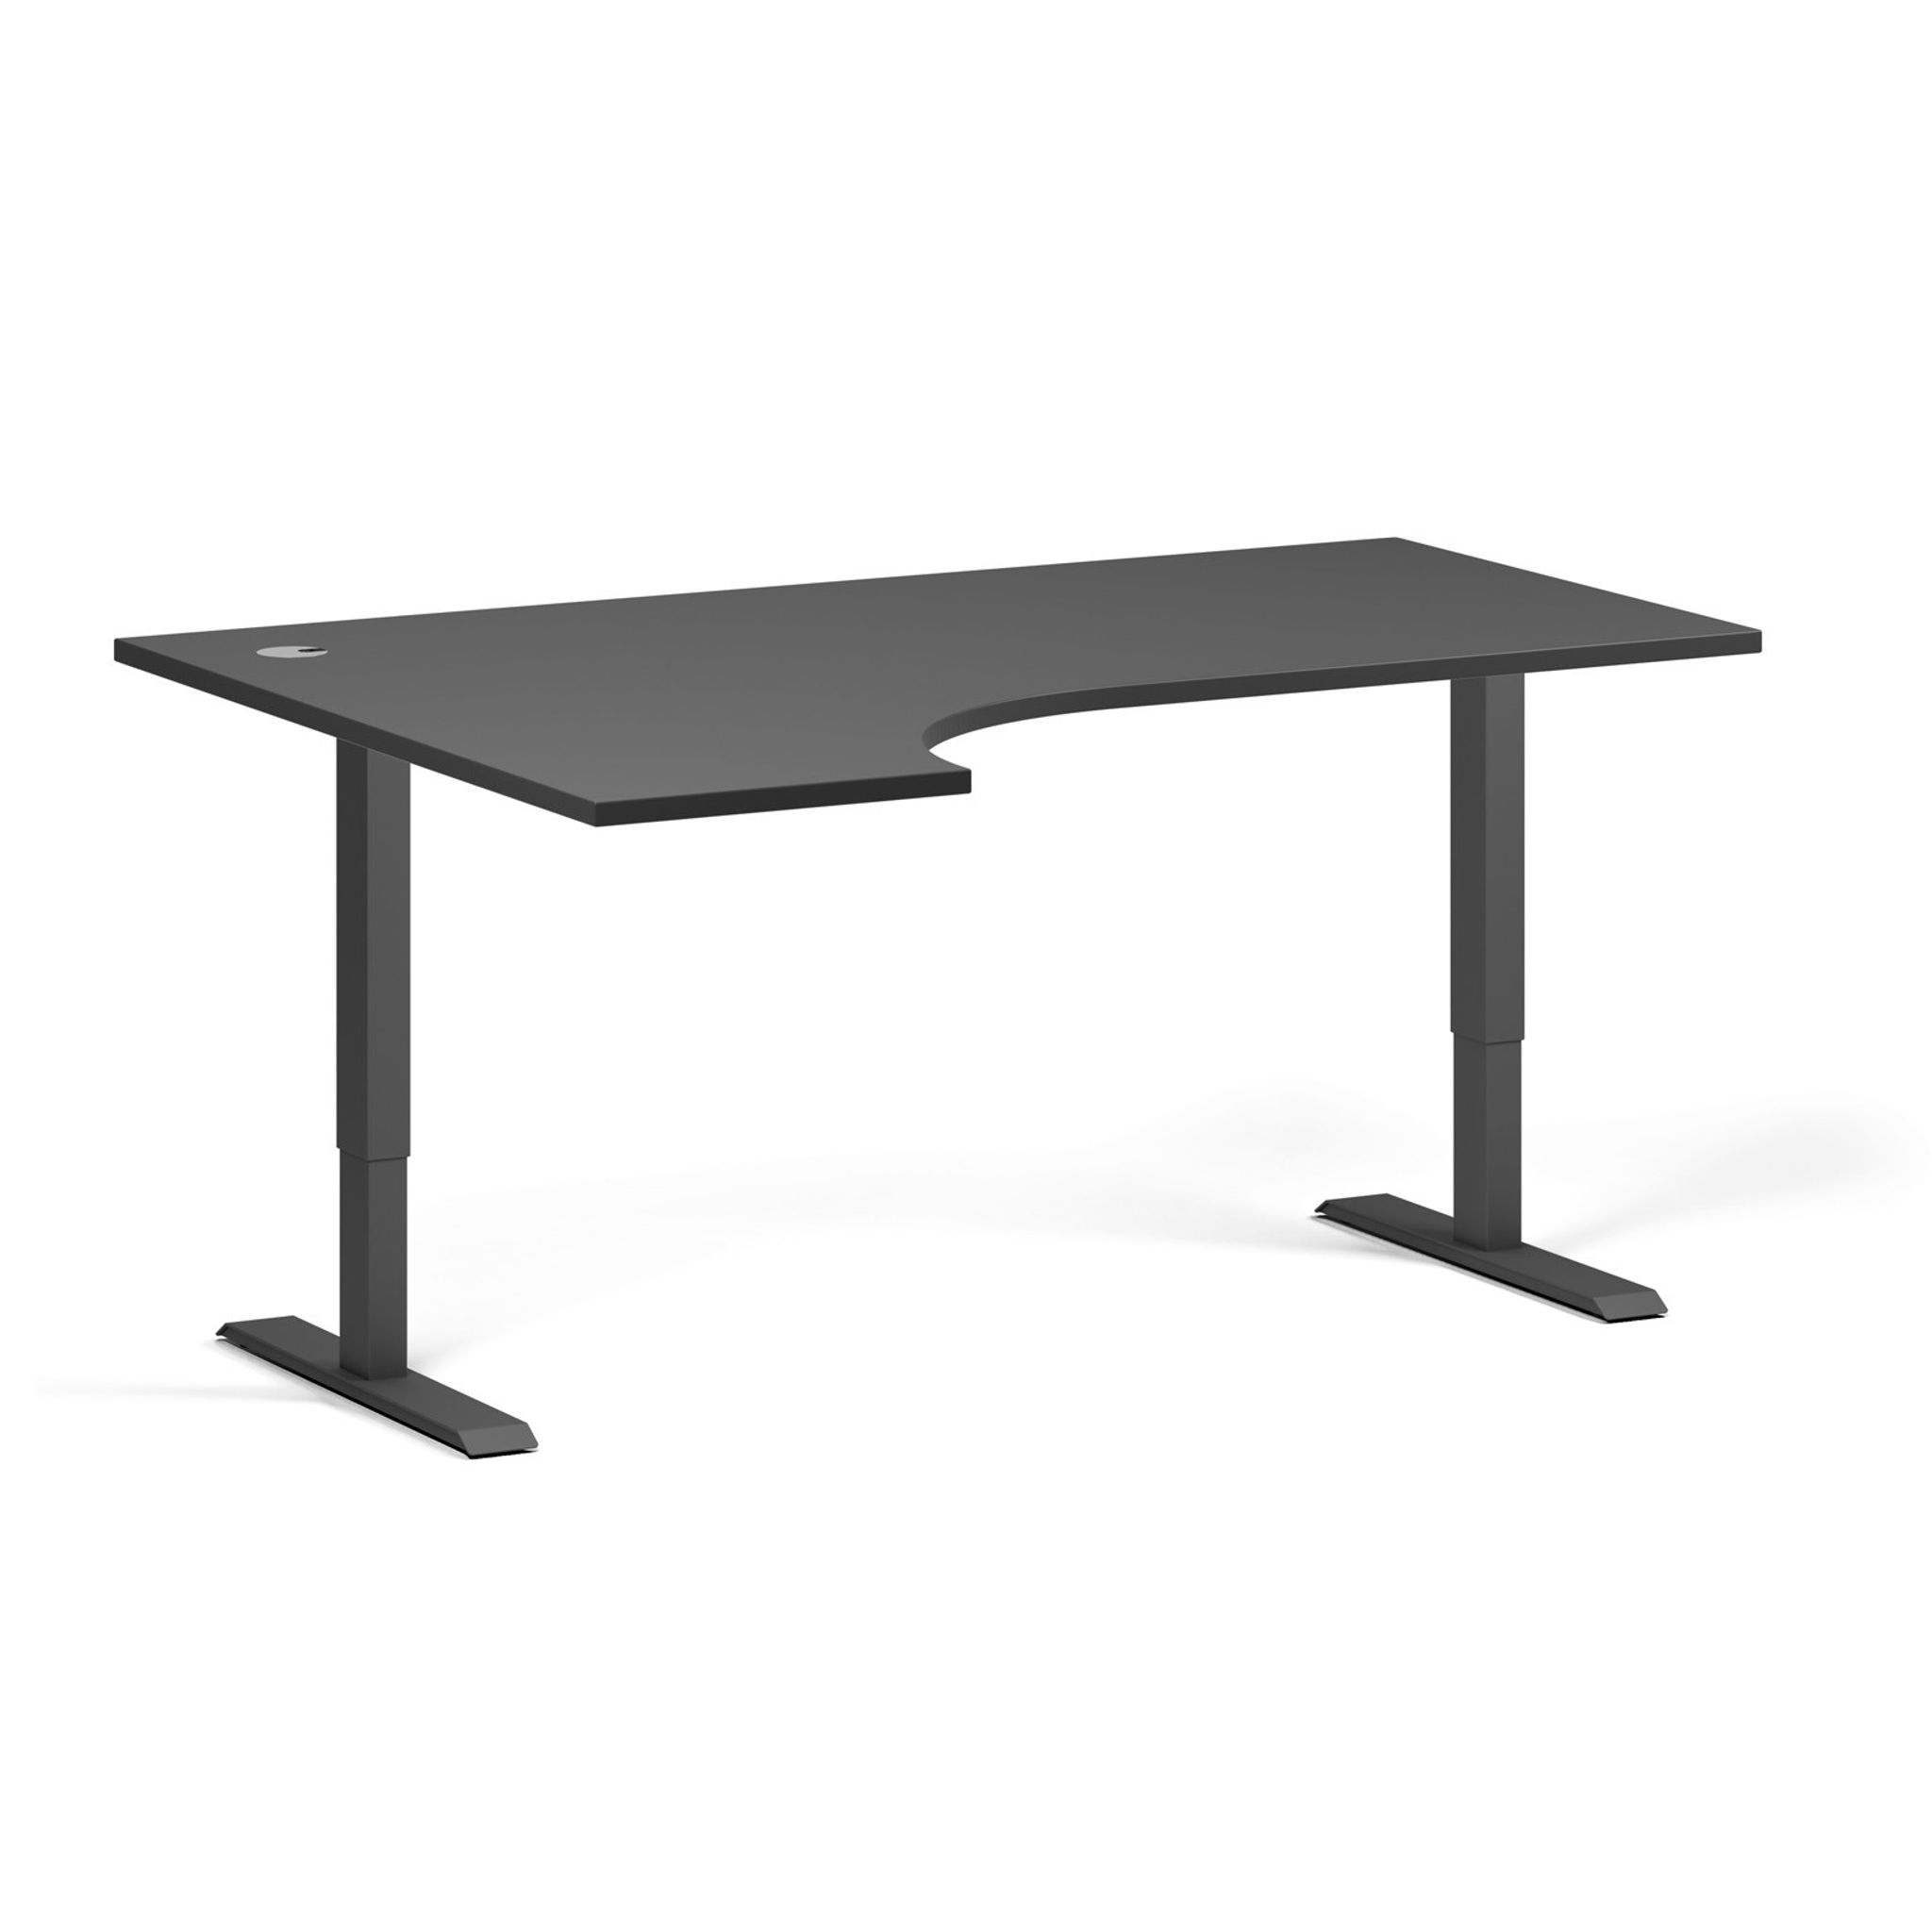 Výškově nastavitelný stůl, 2 motory, 745-1215 mm, rohový levý, deska 1600x1200 mm, černá podnož, grafit